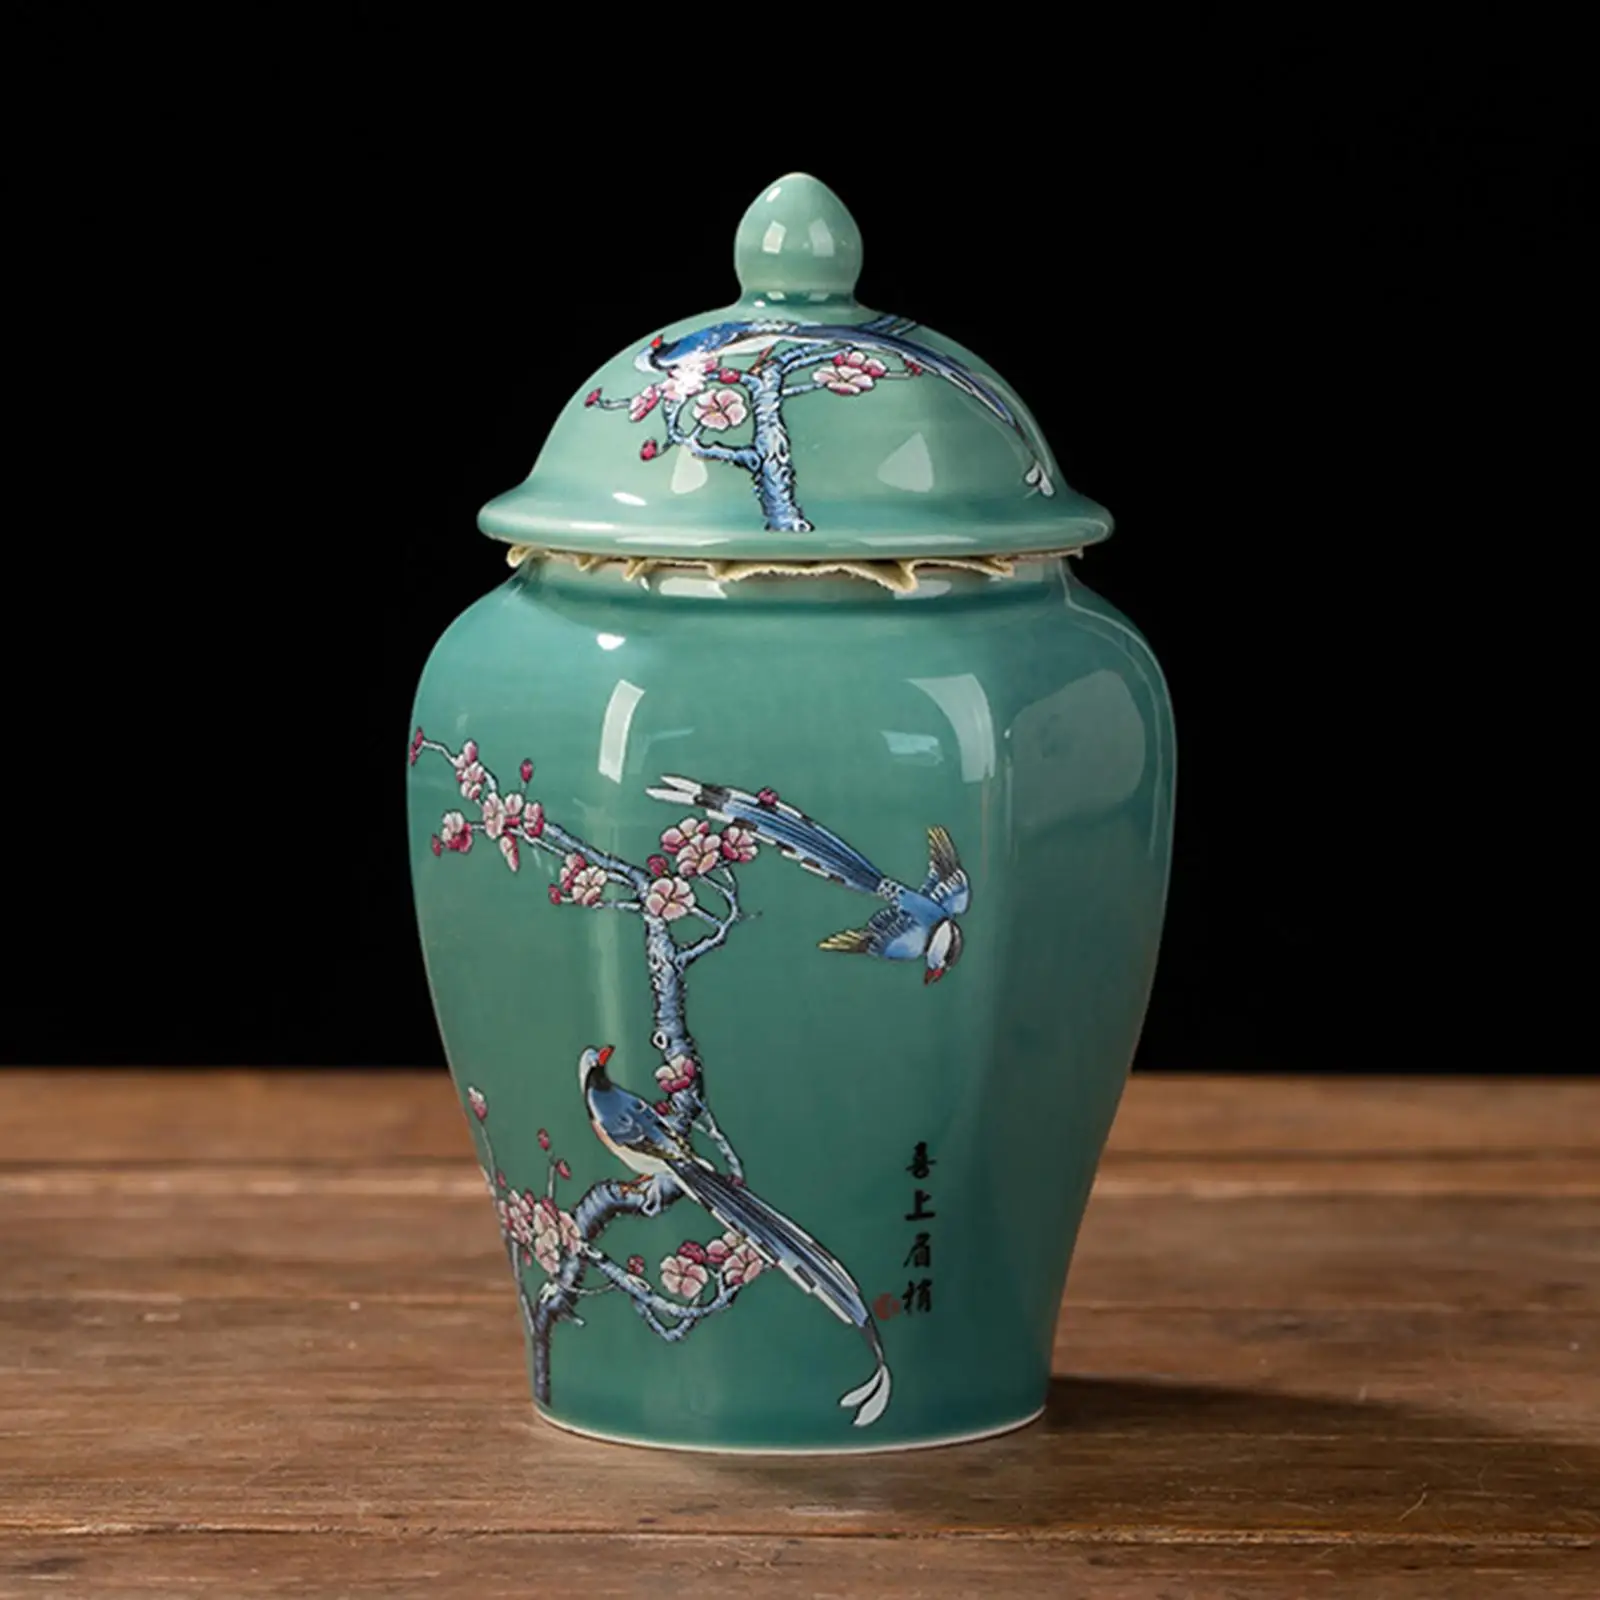 Ceramic Ginger Jar Vintage Style Decorative Gift Crafts Porcelain Jars Vase for Office Table Decoration Wedding Weddings Desktop